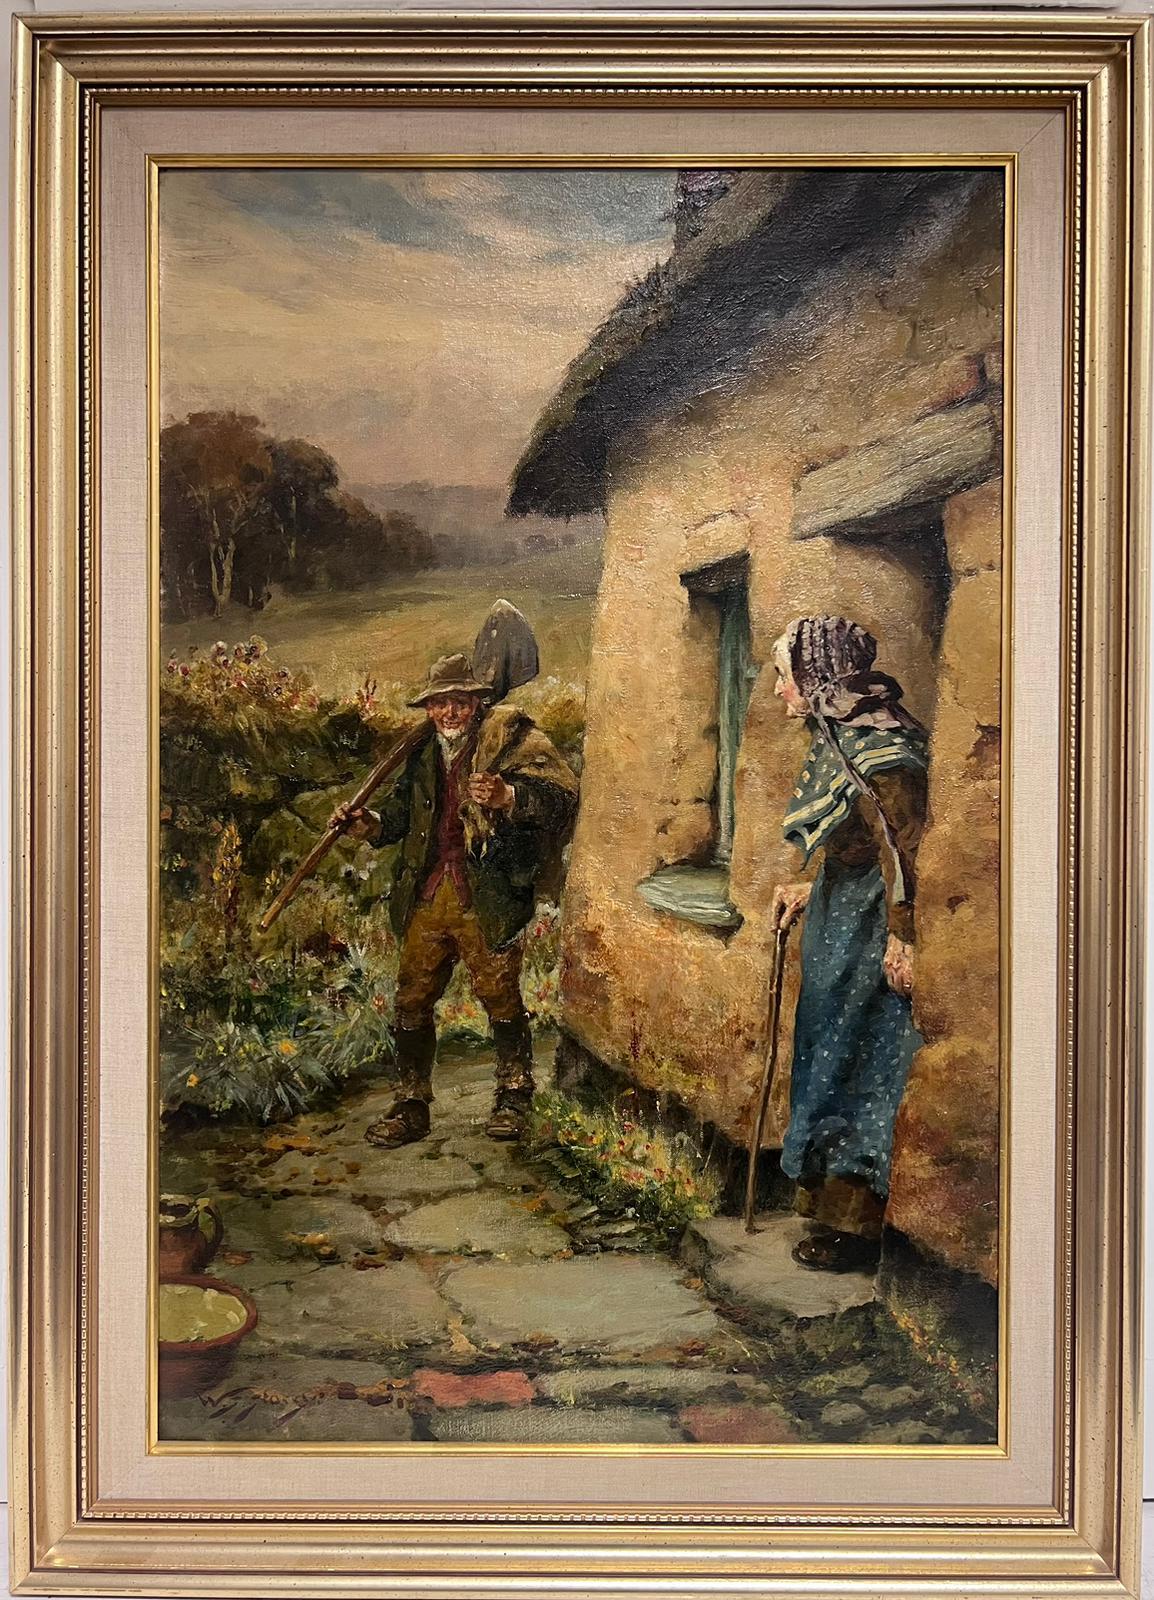 Viktorianisches englisches Ölgemälde, Gärtner, zurückkehrt ins Landhaus, Ölgemälde – Painting von Walter S. Stacey